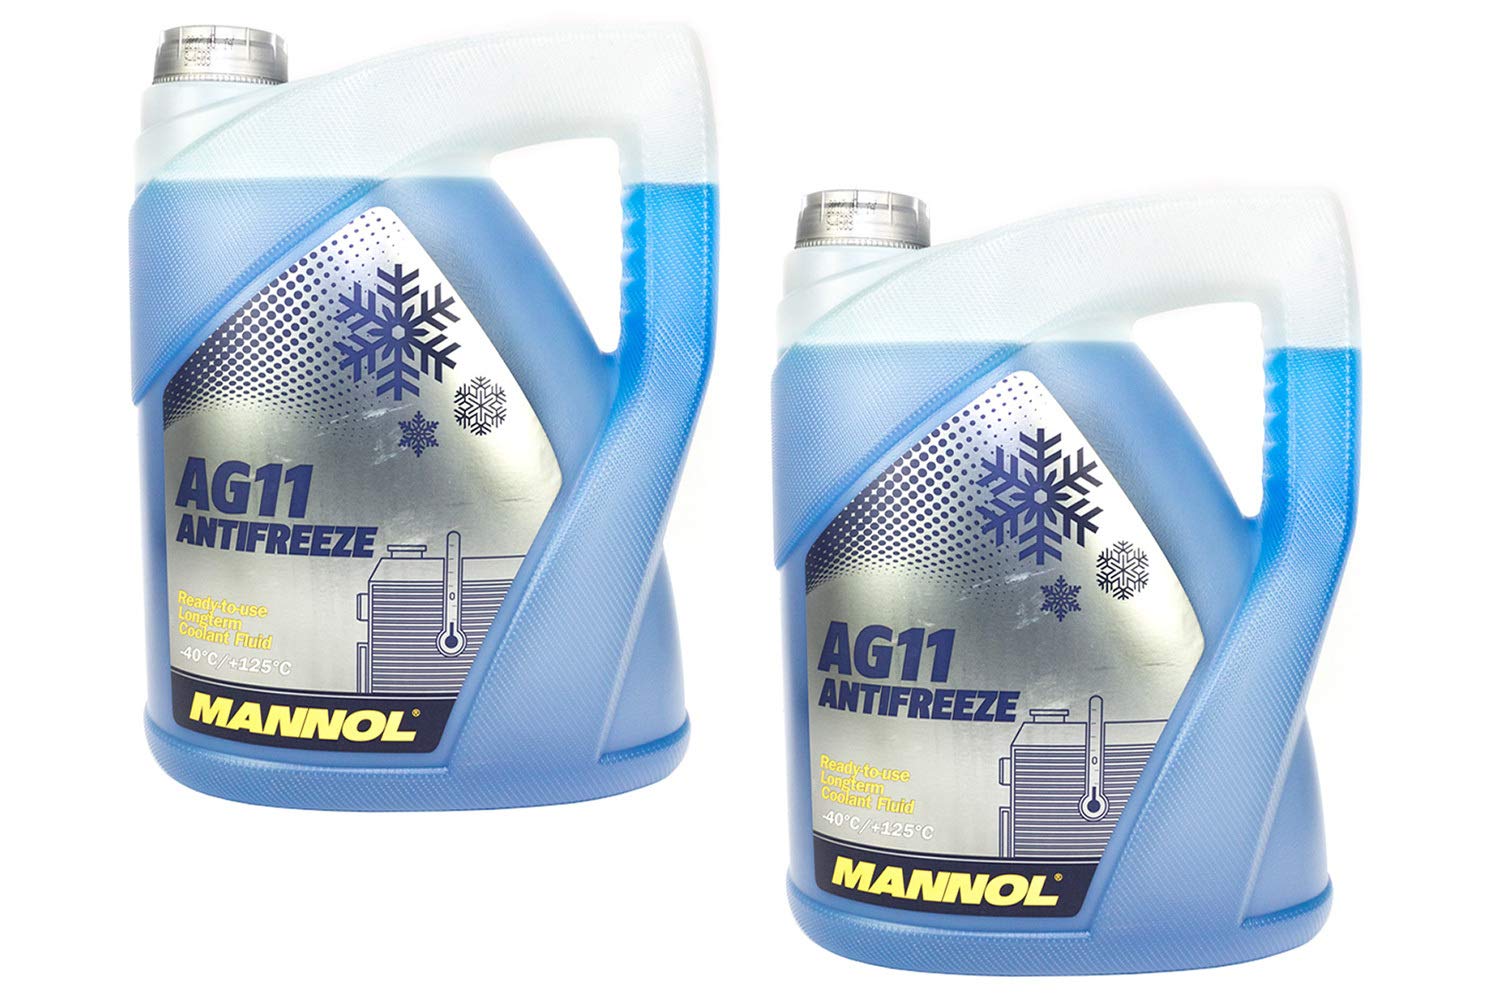 MANNOL Frostschutz Konzentrat blau SAE J1034 Longterm Antifreeze AG11-40°C 2 Stück á 5 Liter von MANNOL